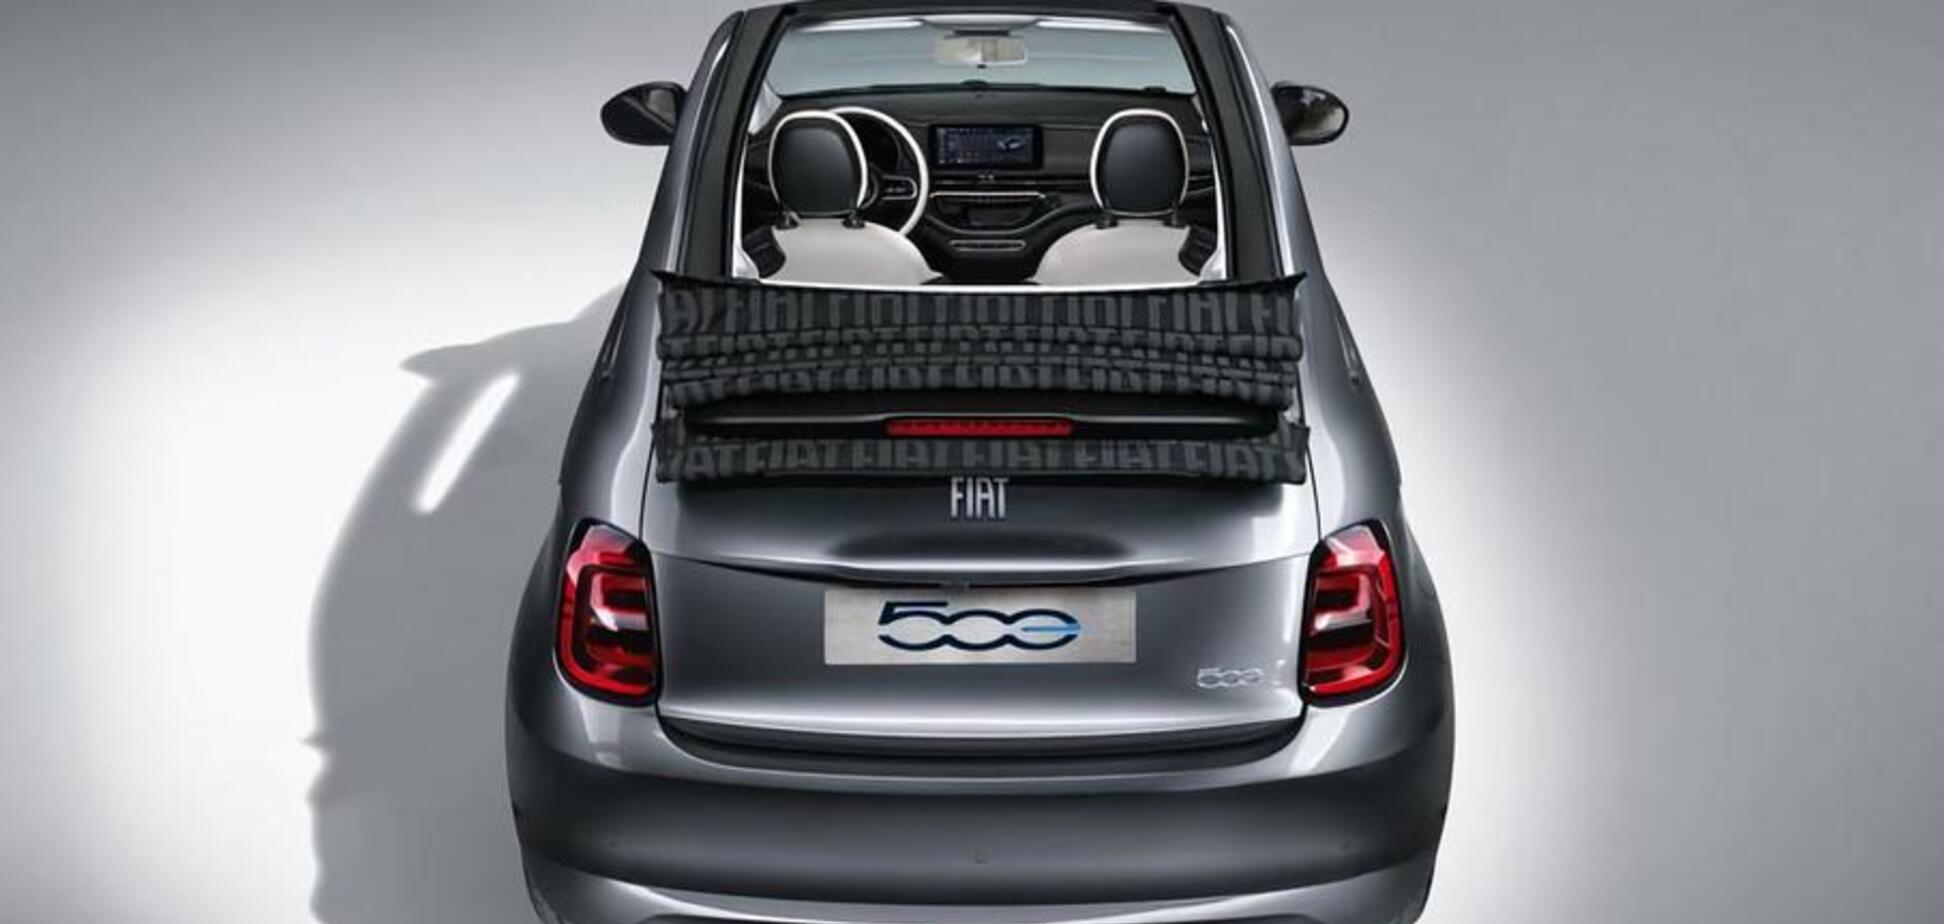 Fiat показал компактный ситикар с огромным запасом хода